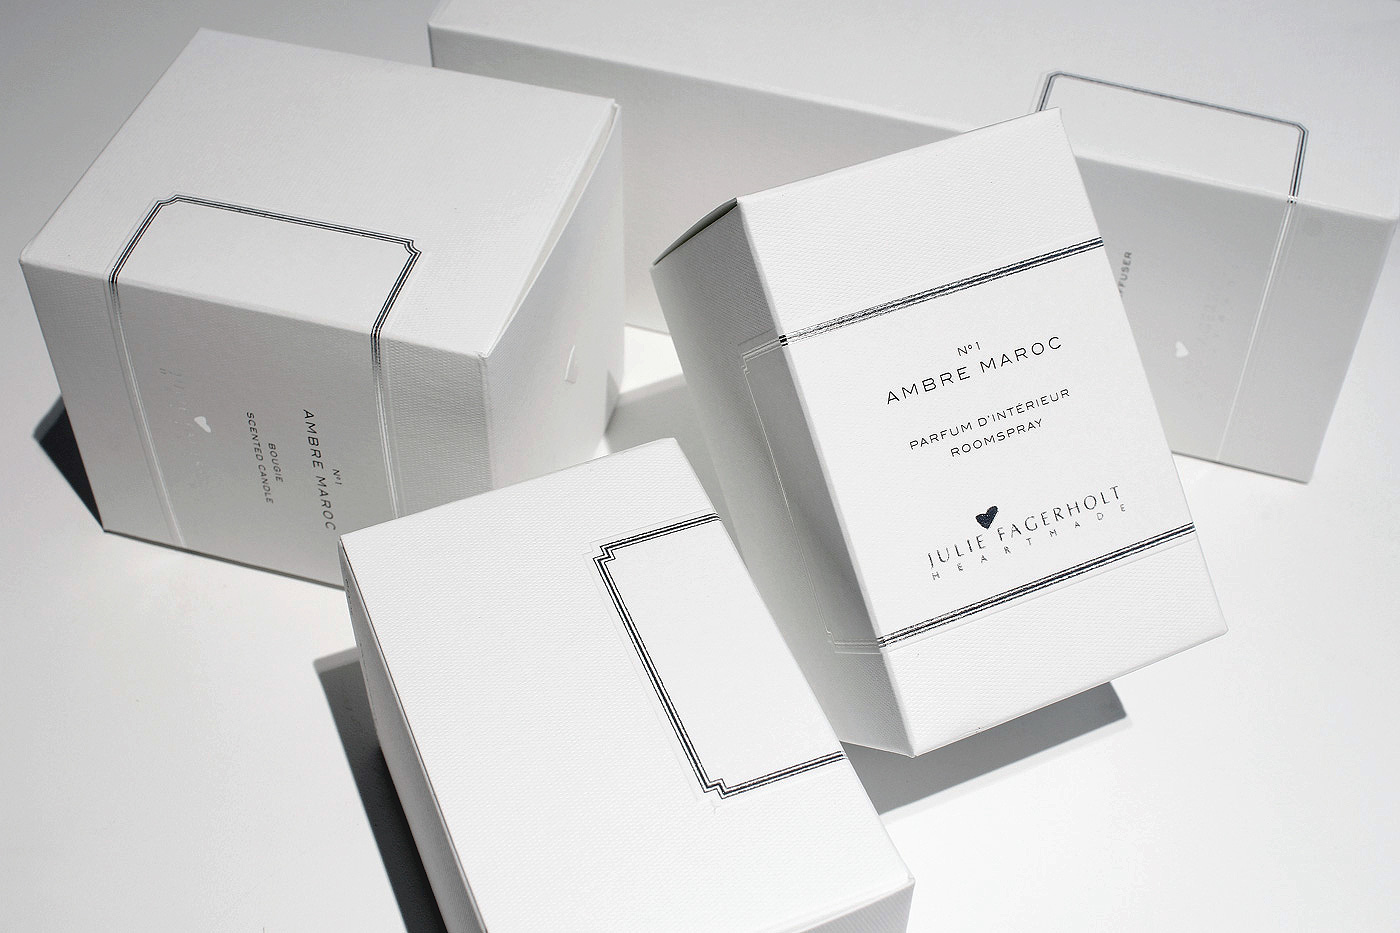 Julie Fagerholt – Heartmade – Fragrance packaging